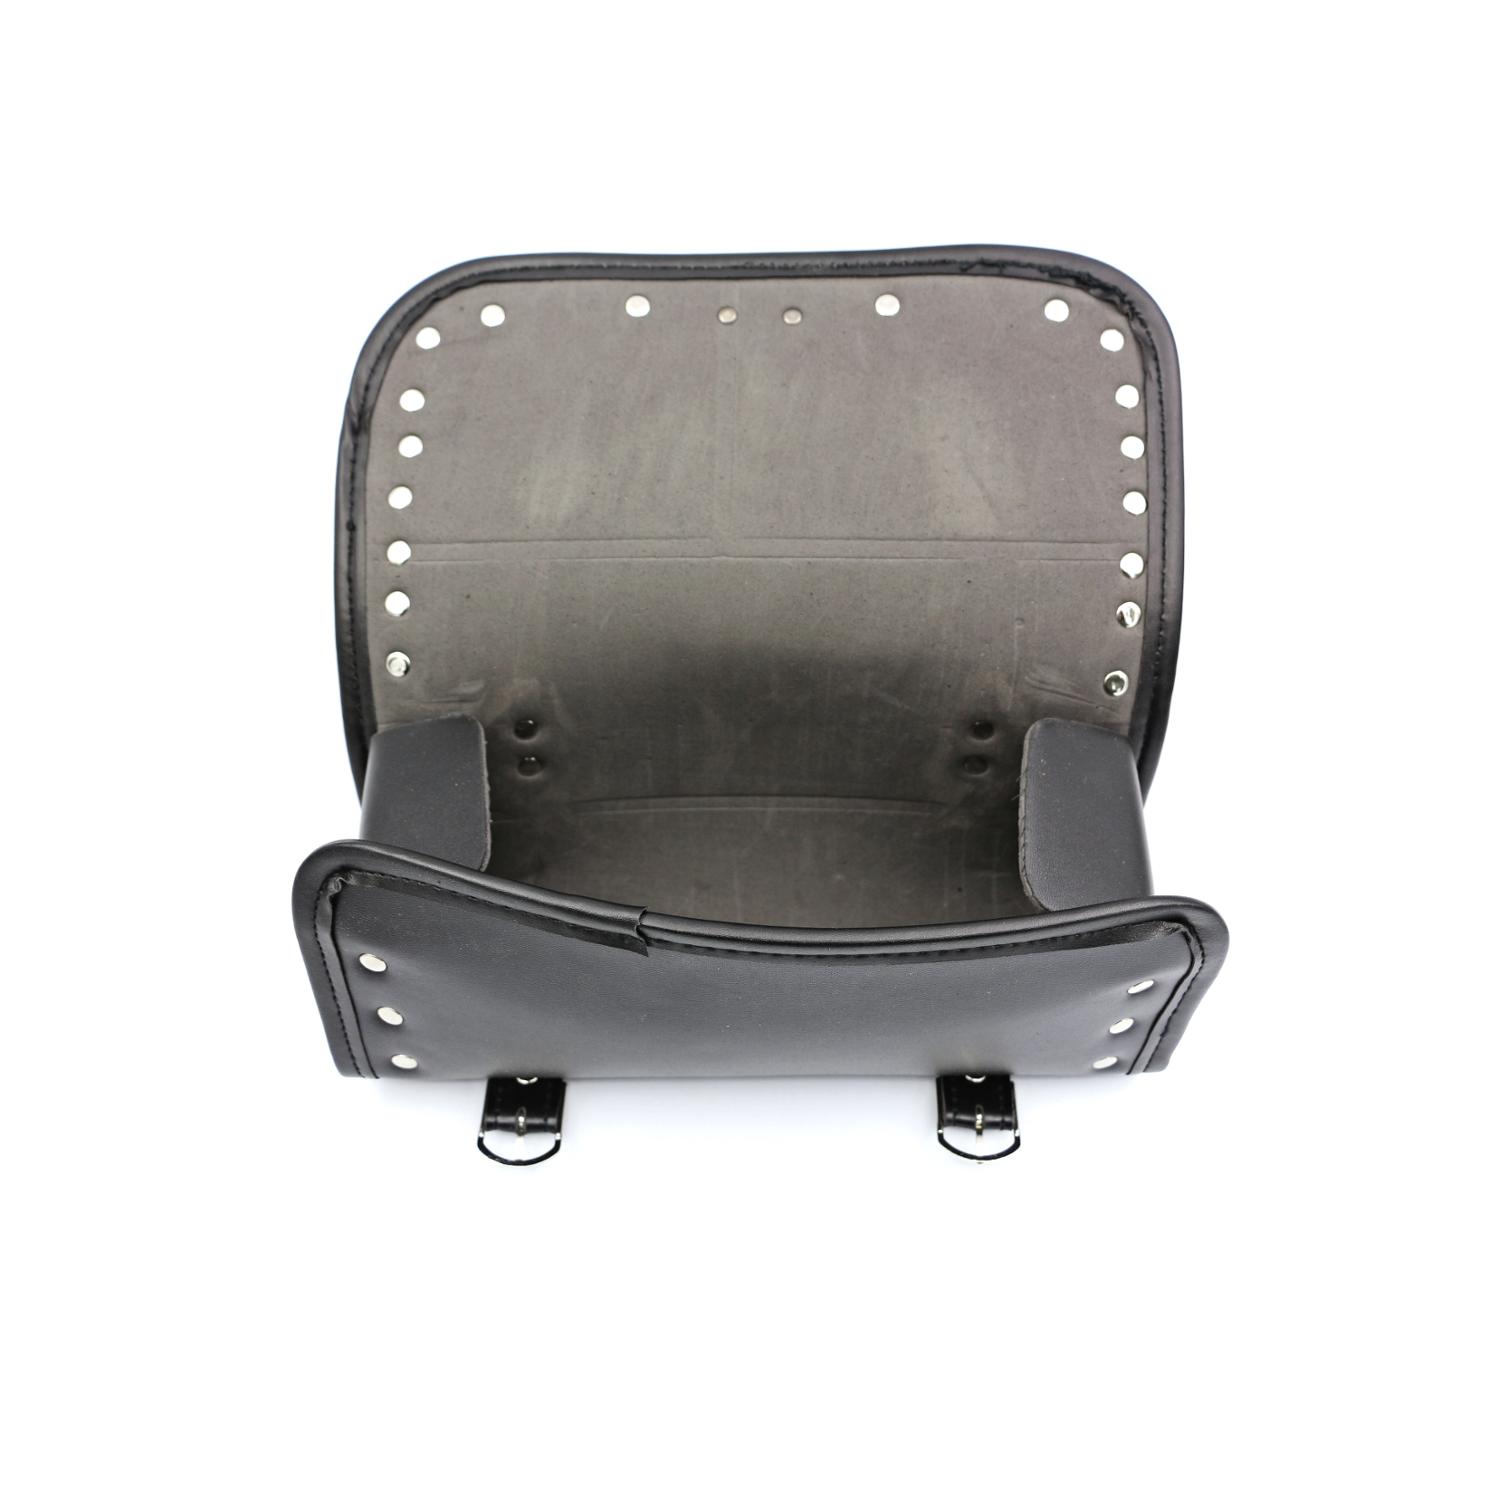 Universel motorcykel pu læder sadeltaske værktøj opbevaringspose forhjul roll sadel bagage tasker til harley suzuki / honda